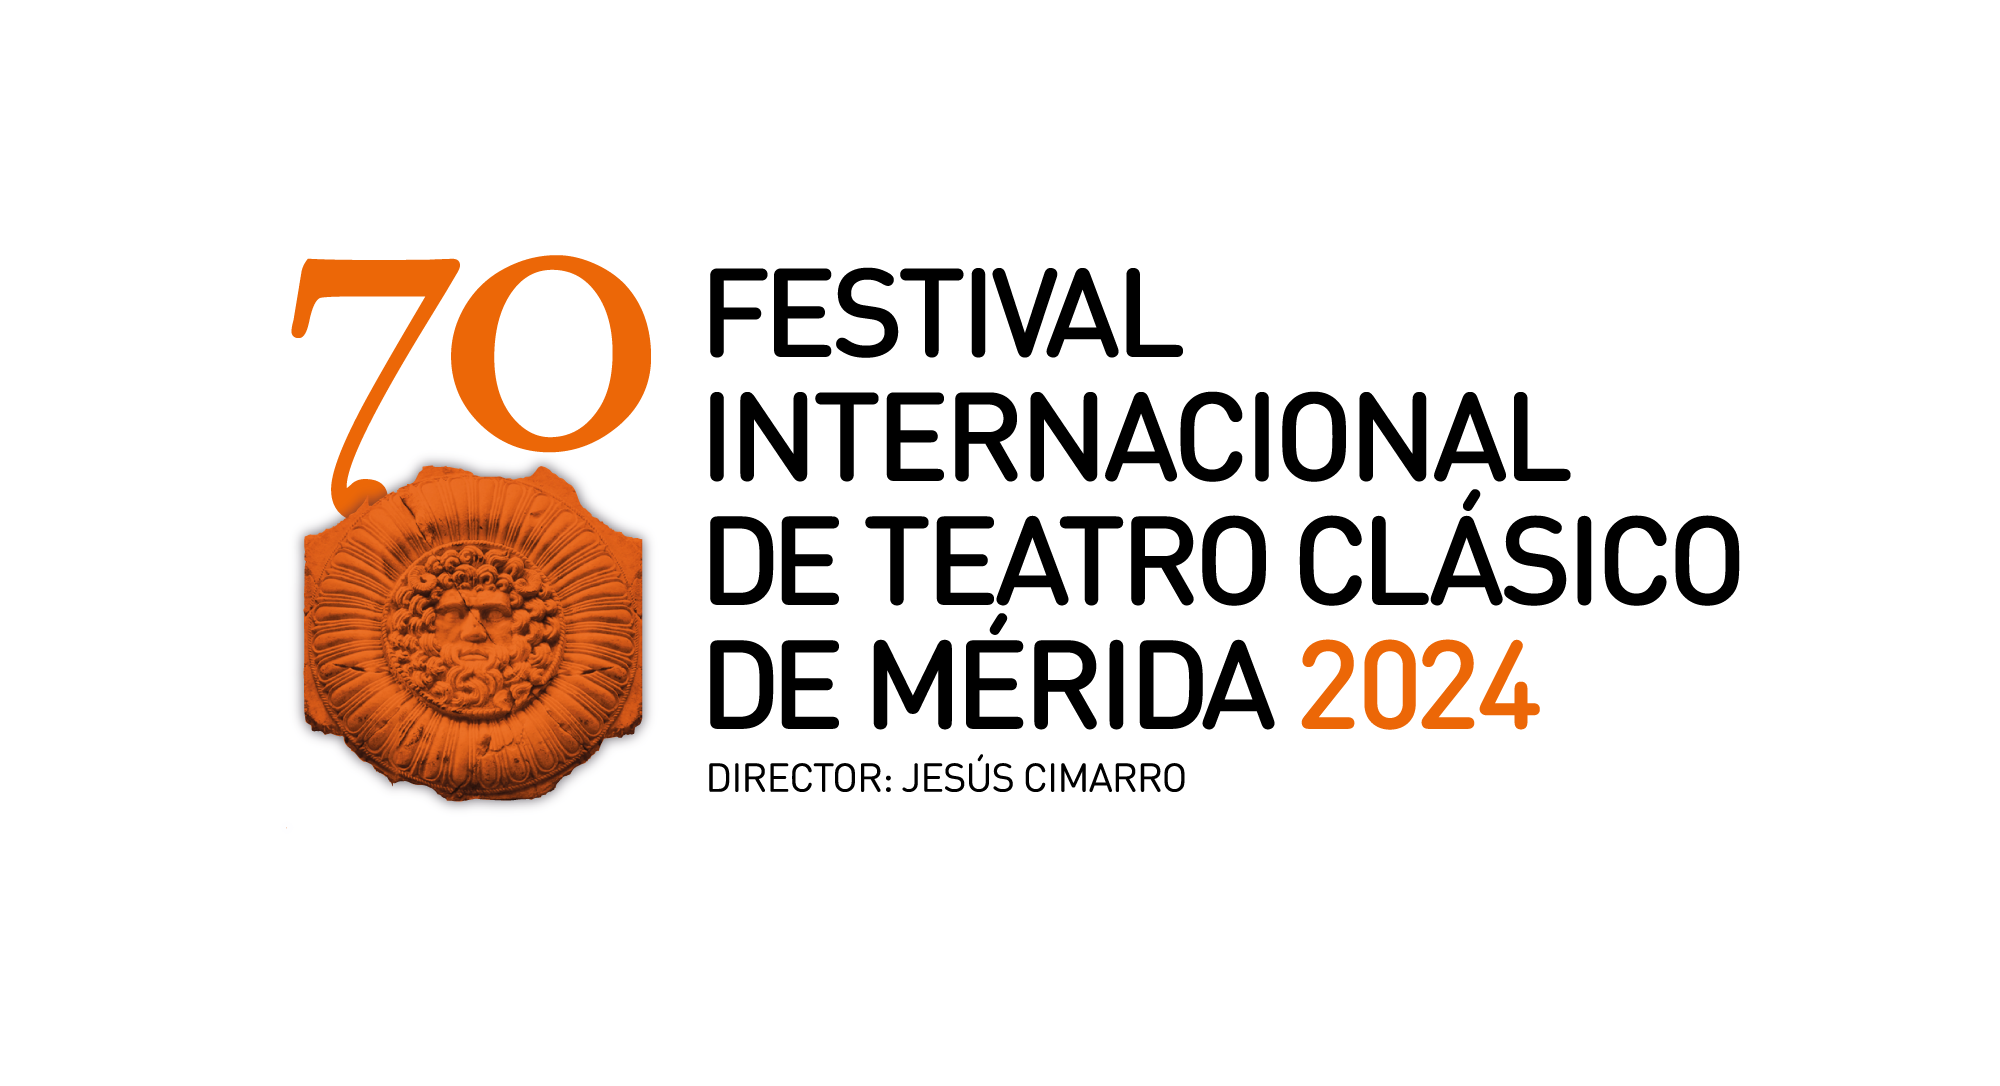 Consorcio Patronato del Festival Internacional de Teatro Clásico de Mérida 2024